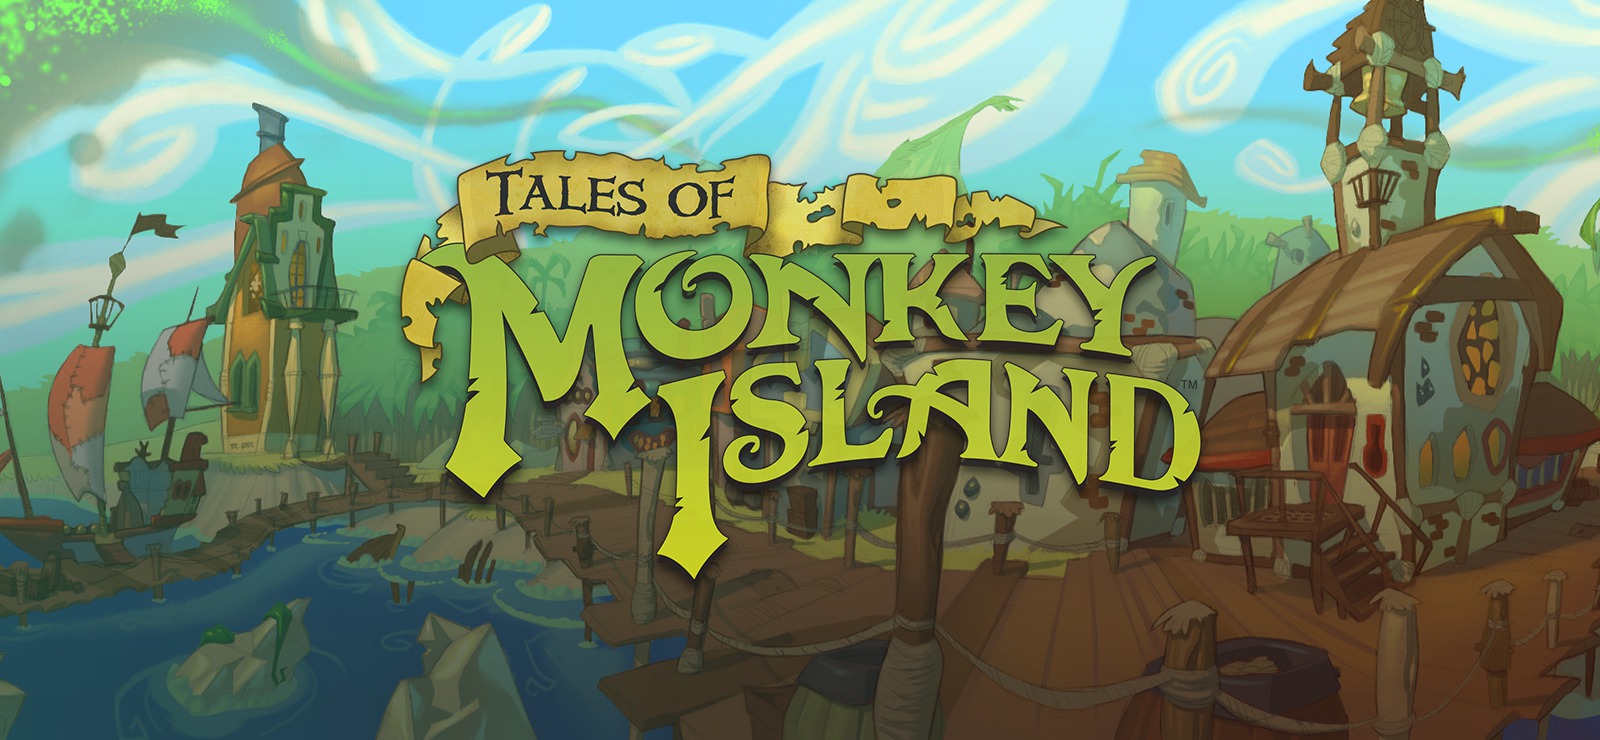 Tales of Monkey.jpg